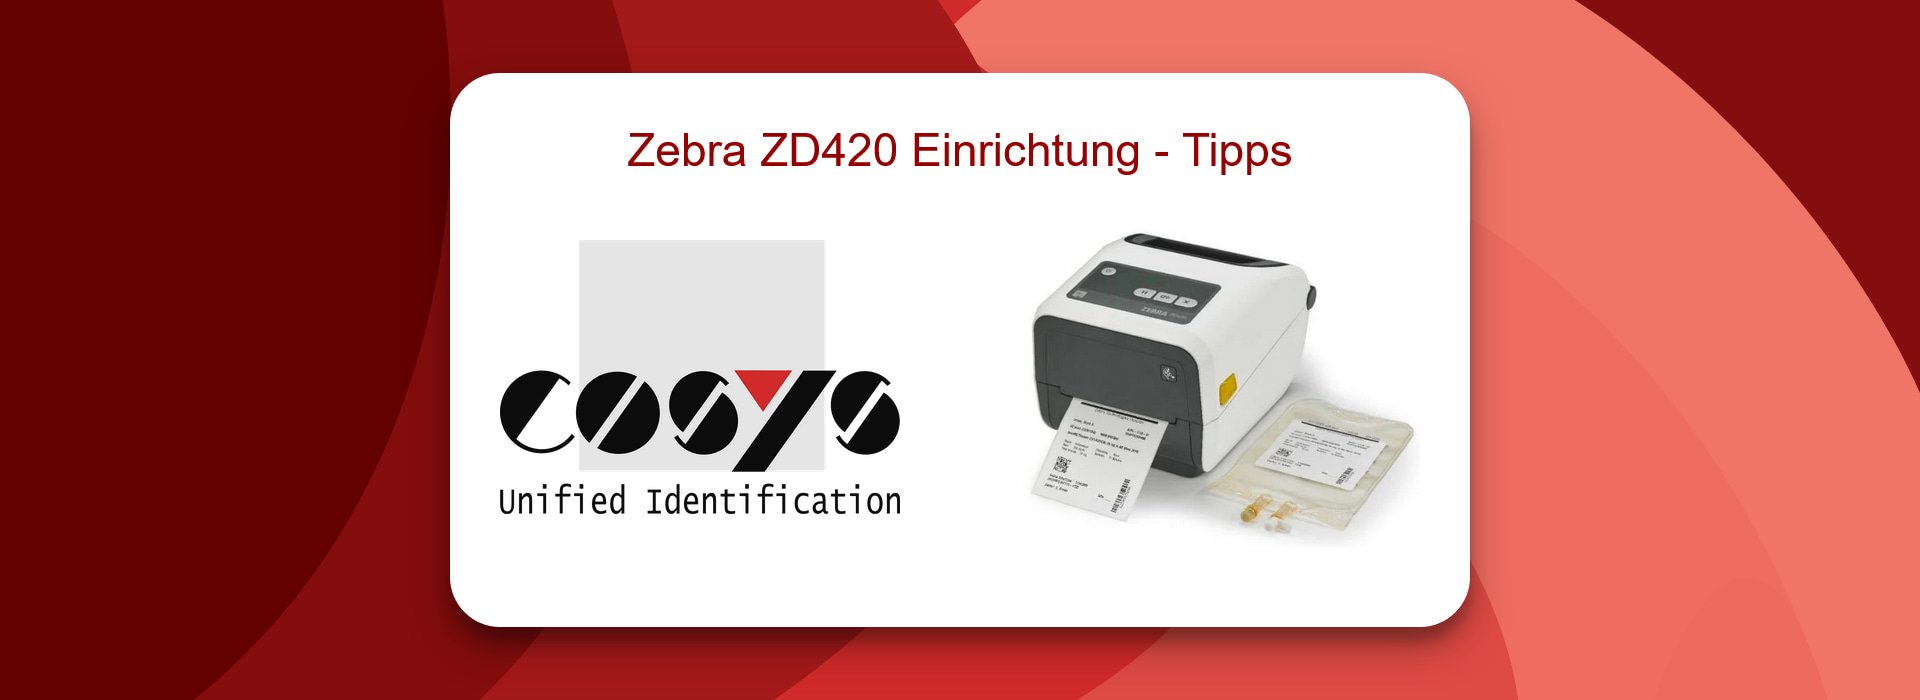 Zebra ZD420 Einrichtung - Schnellstart-Tipps